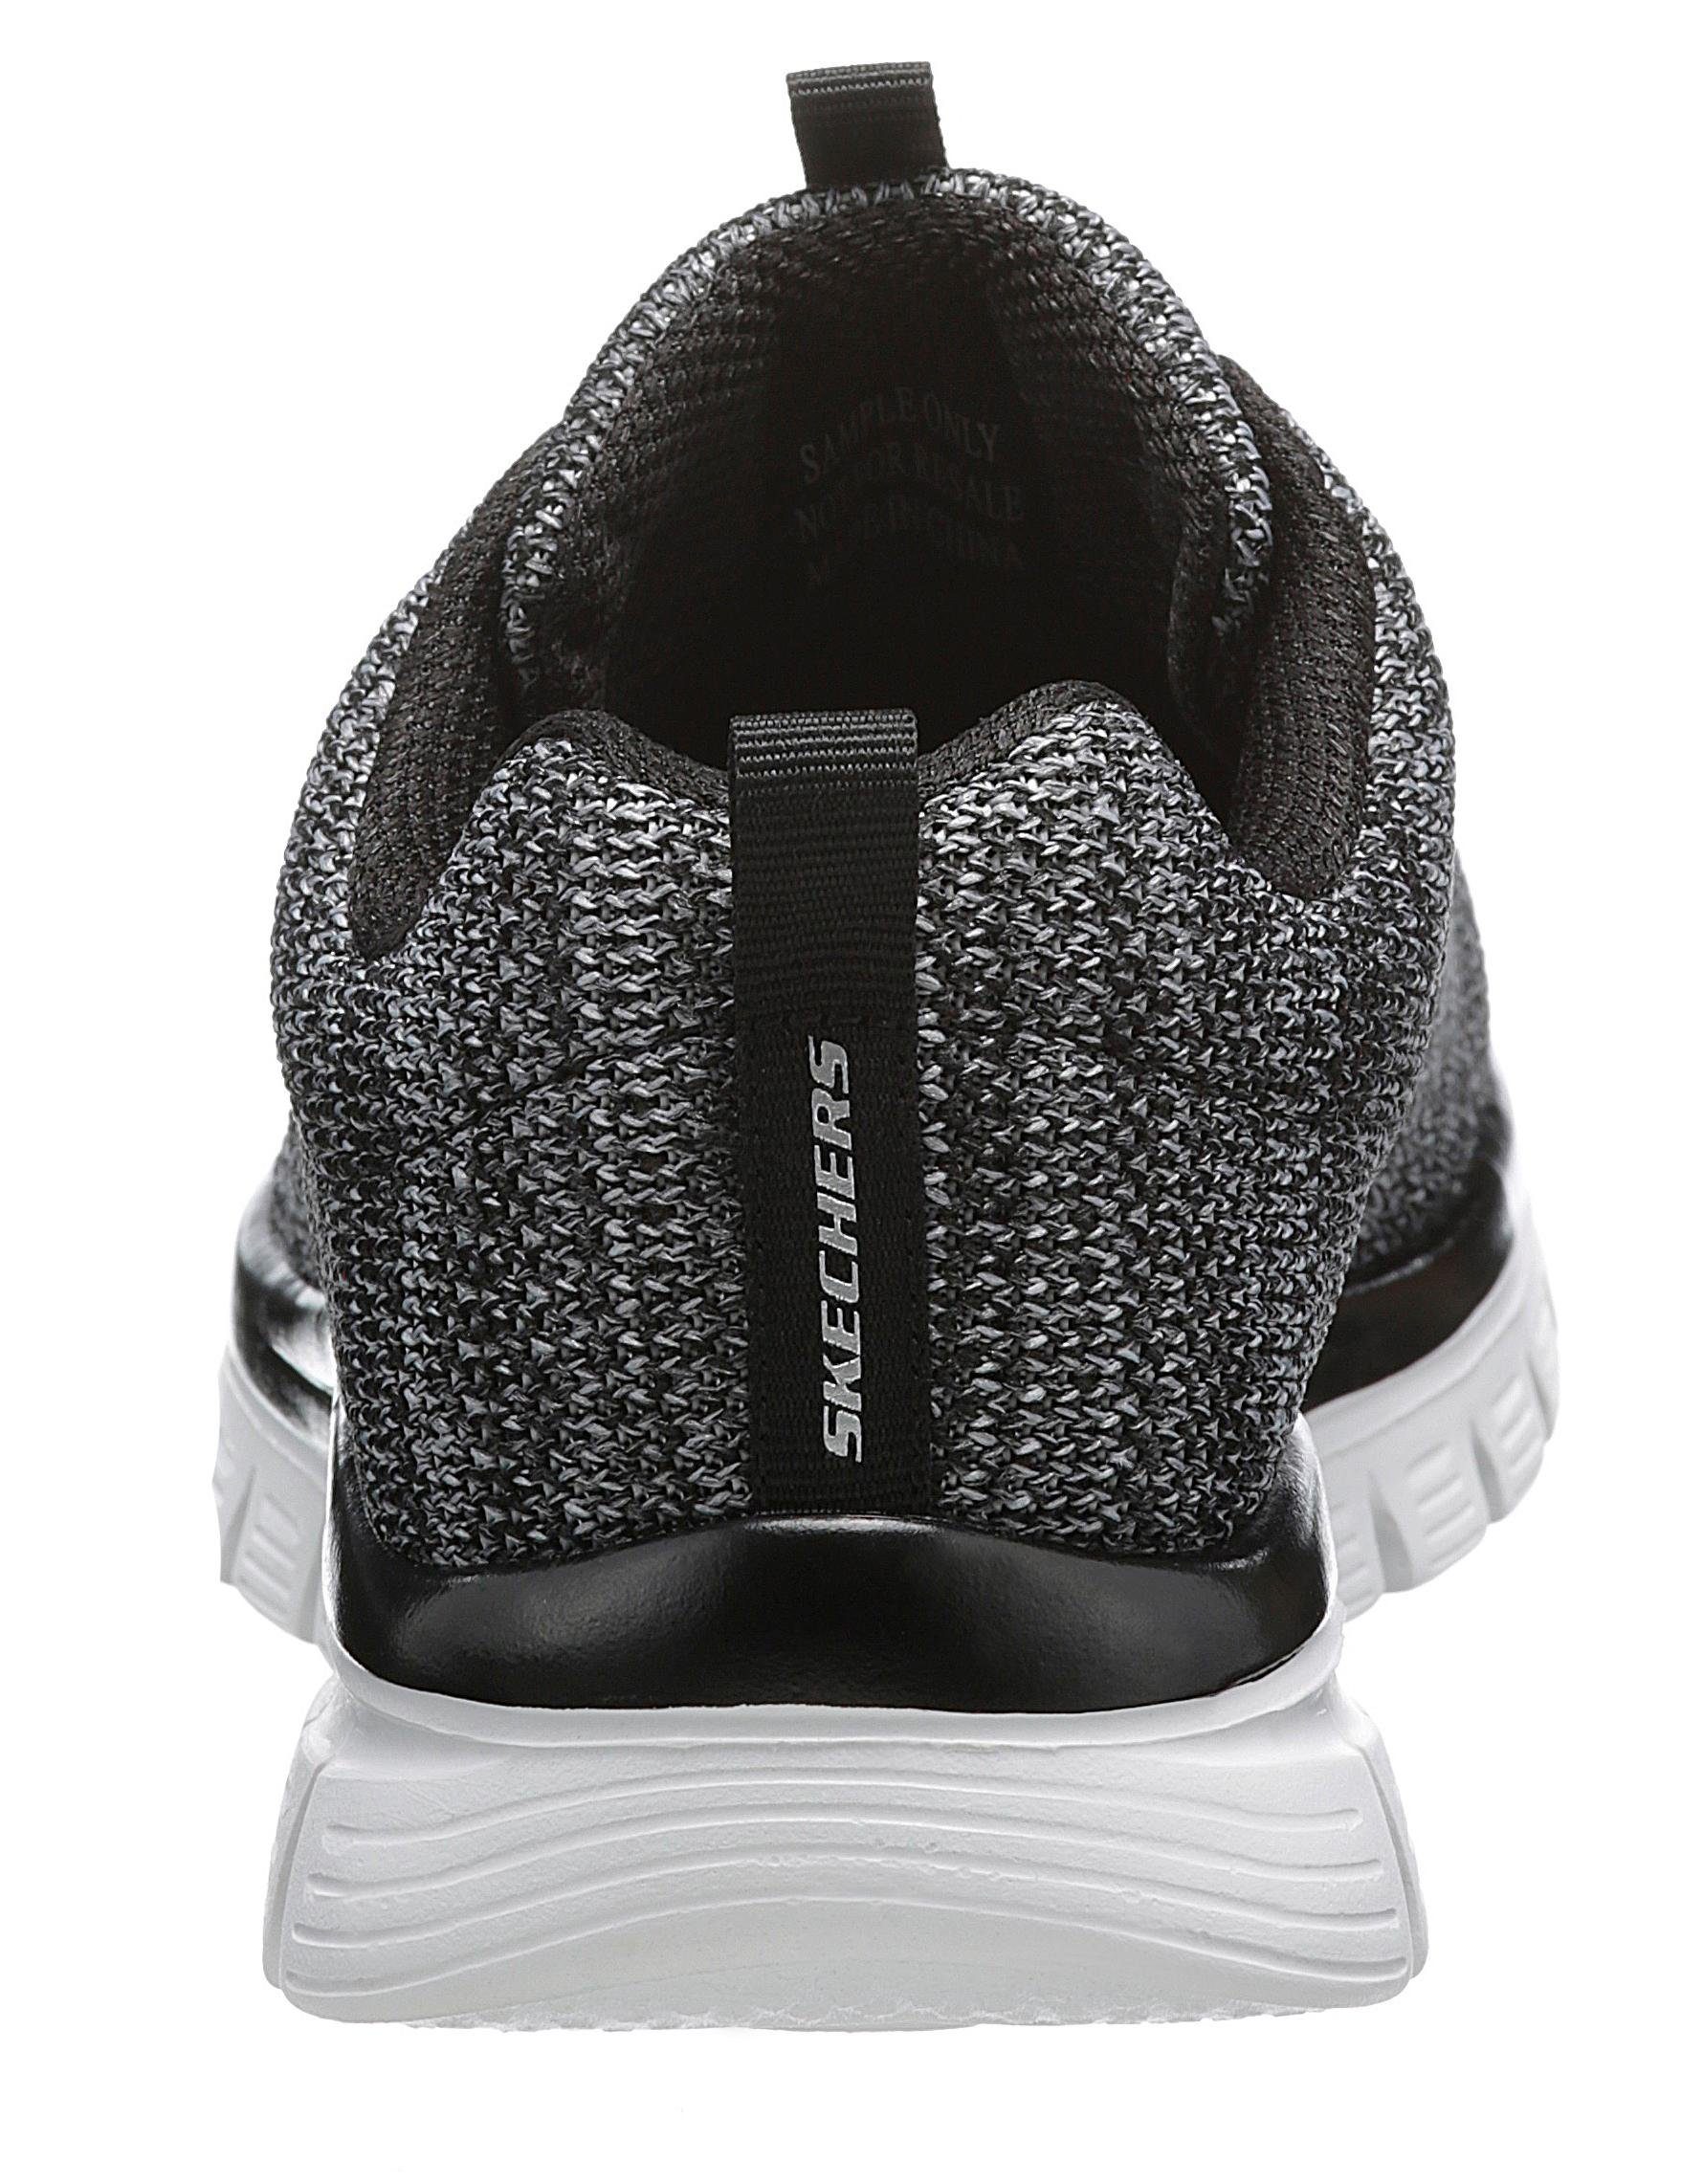 Skechers Graceful - Twisted Sneaker Memory mit Fortune Foam schwarz-weiß